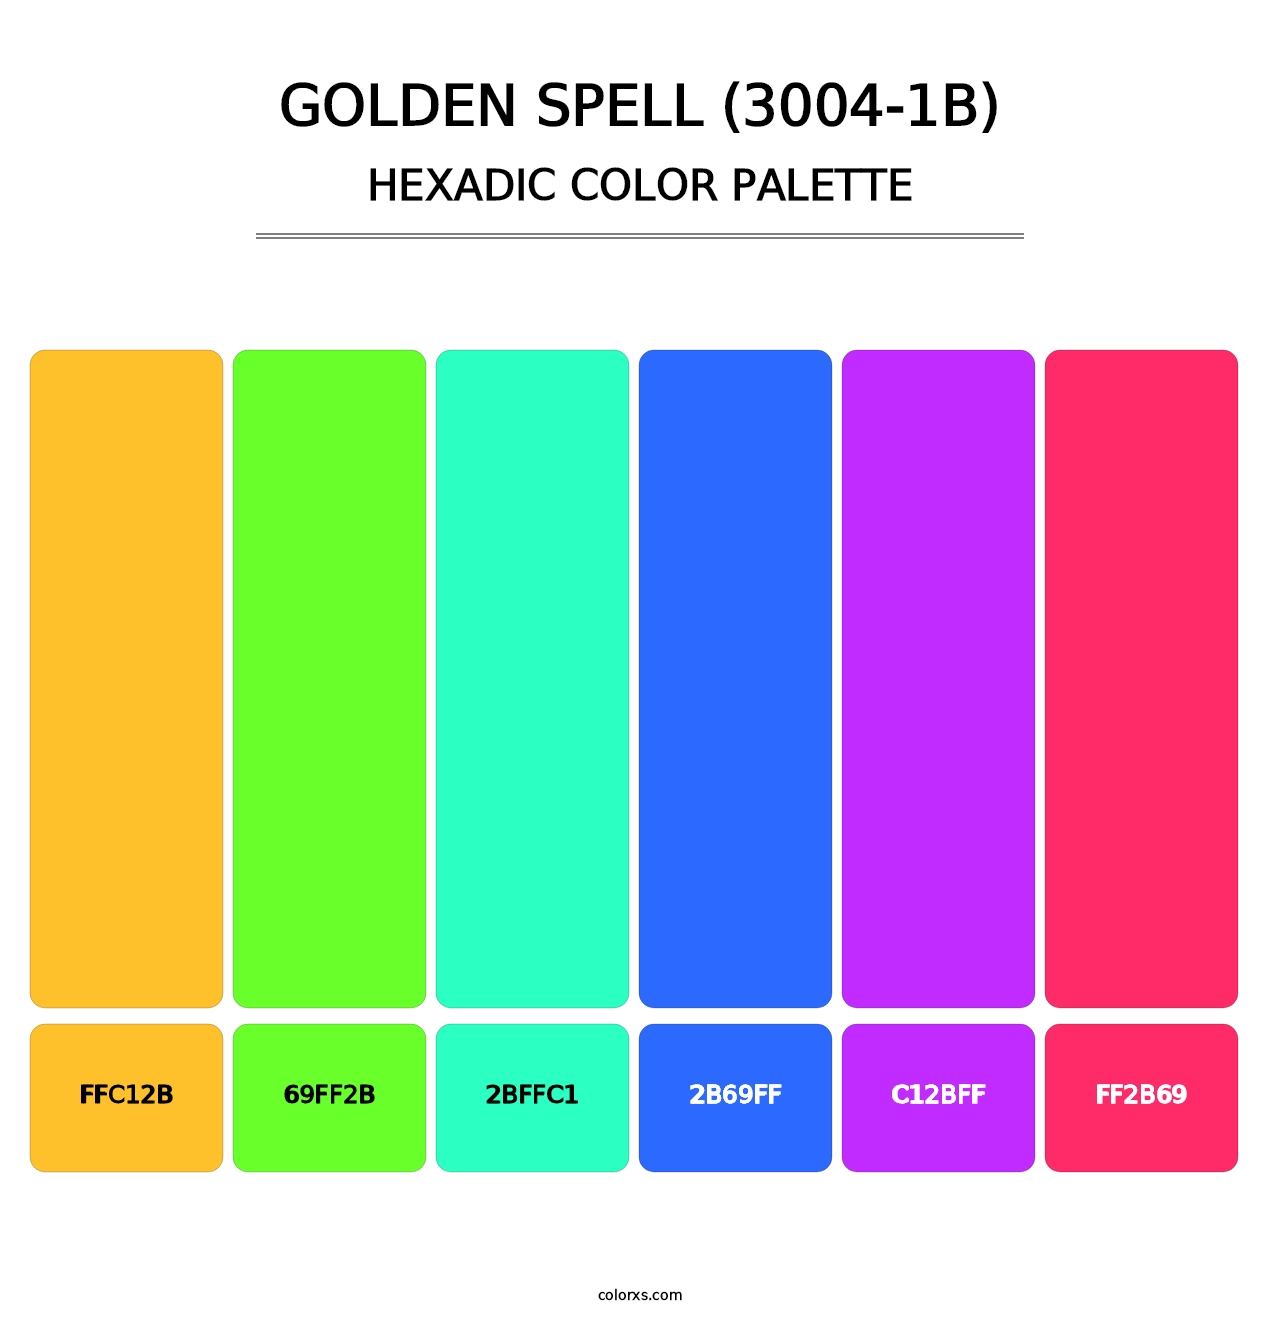 Golden Spell (3004-1B) - Hexadic Color Palette